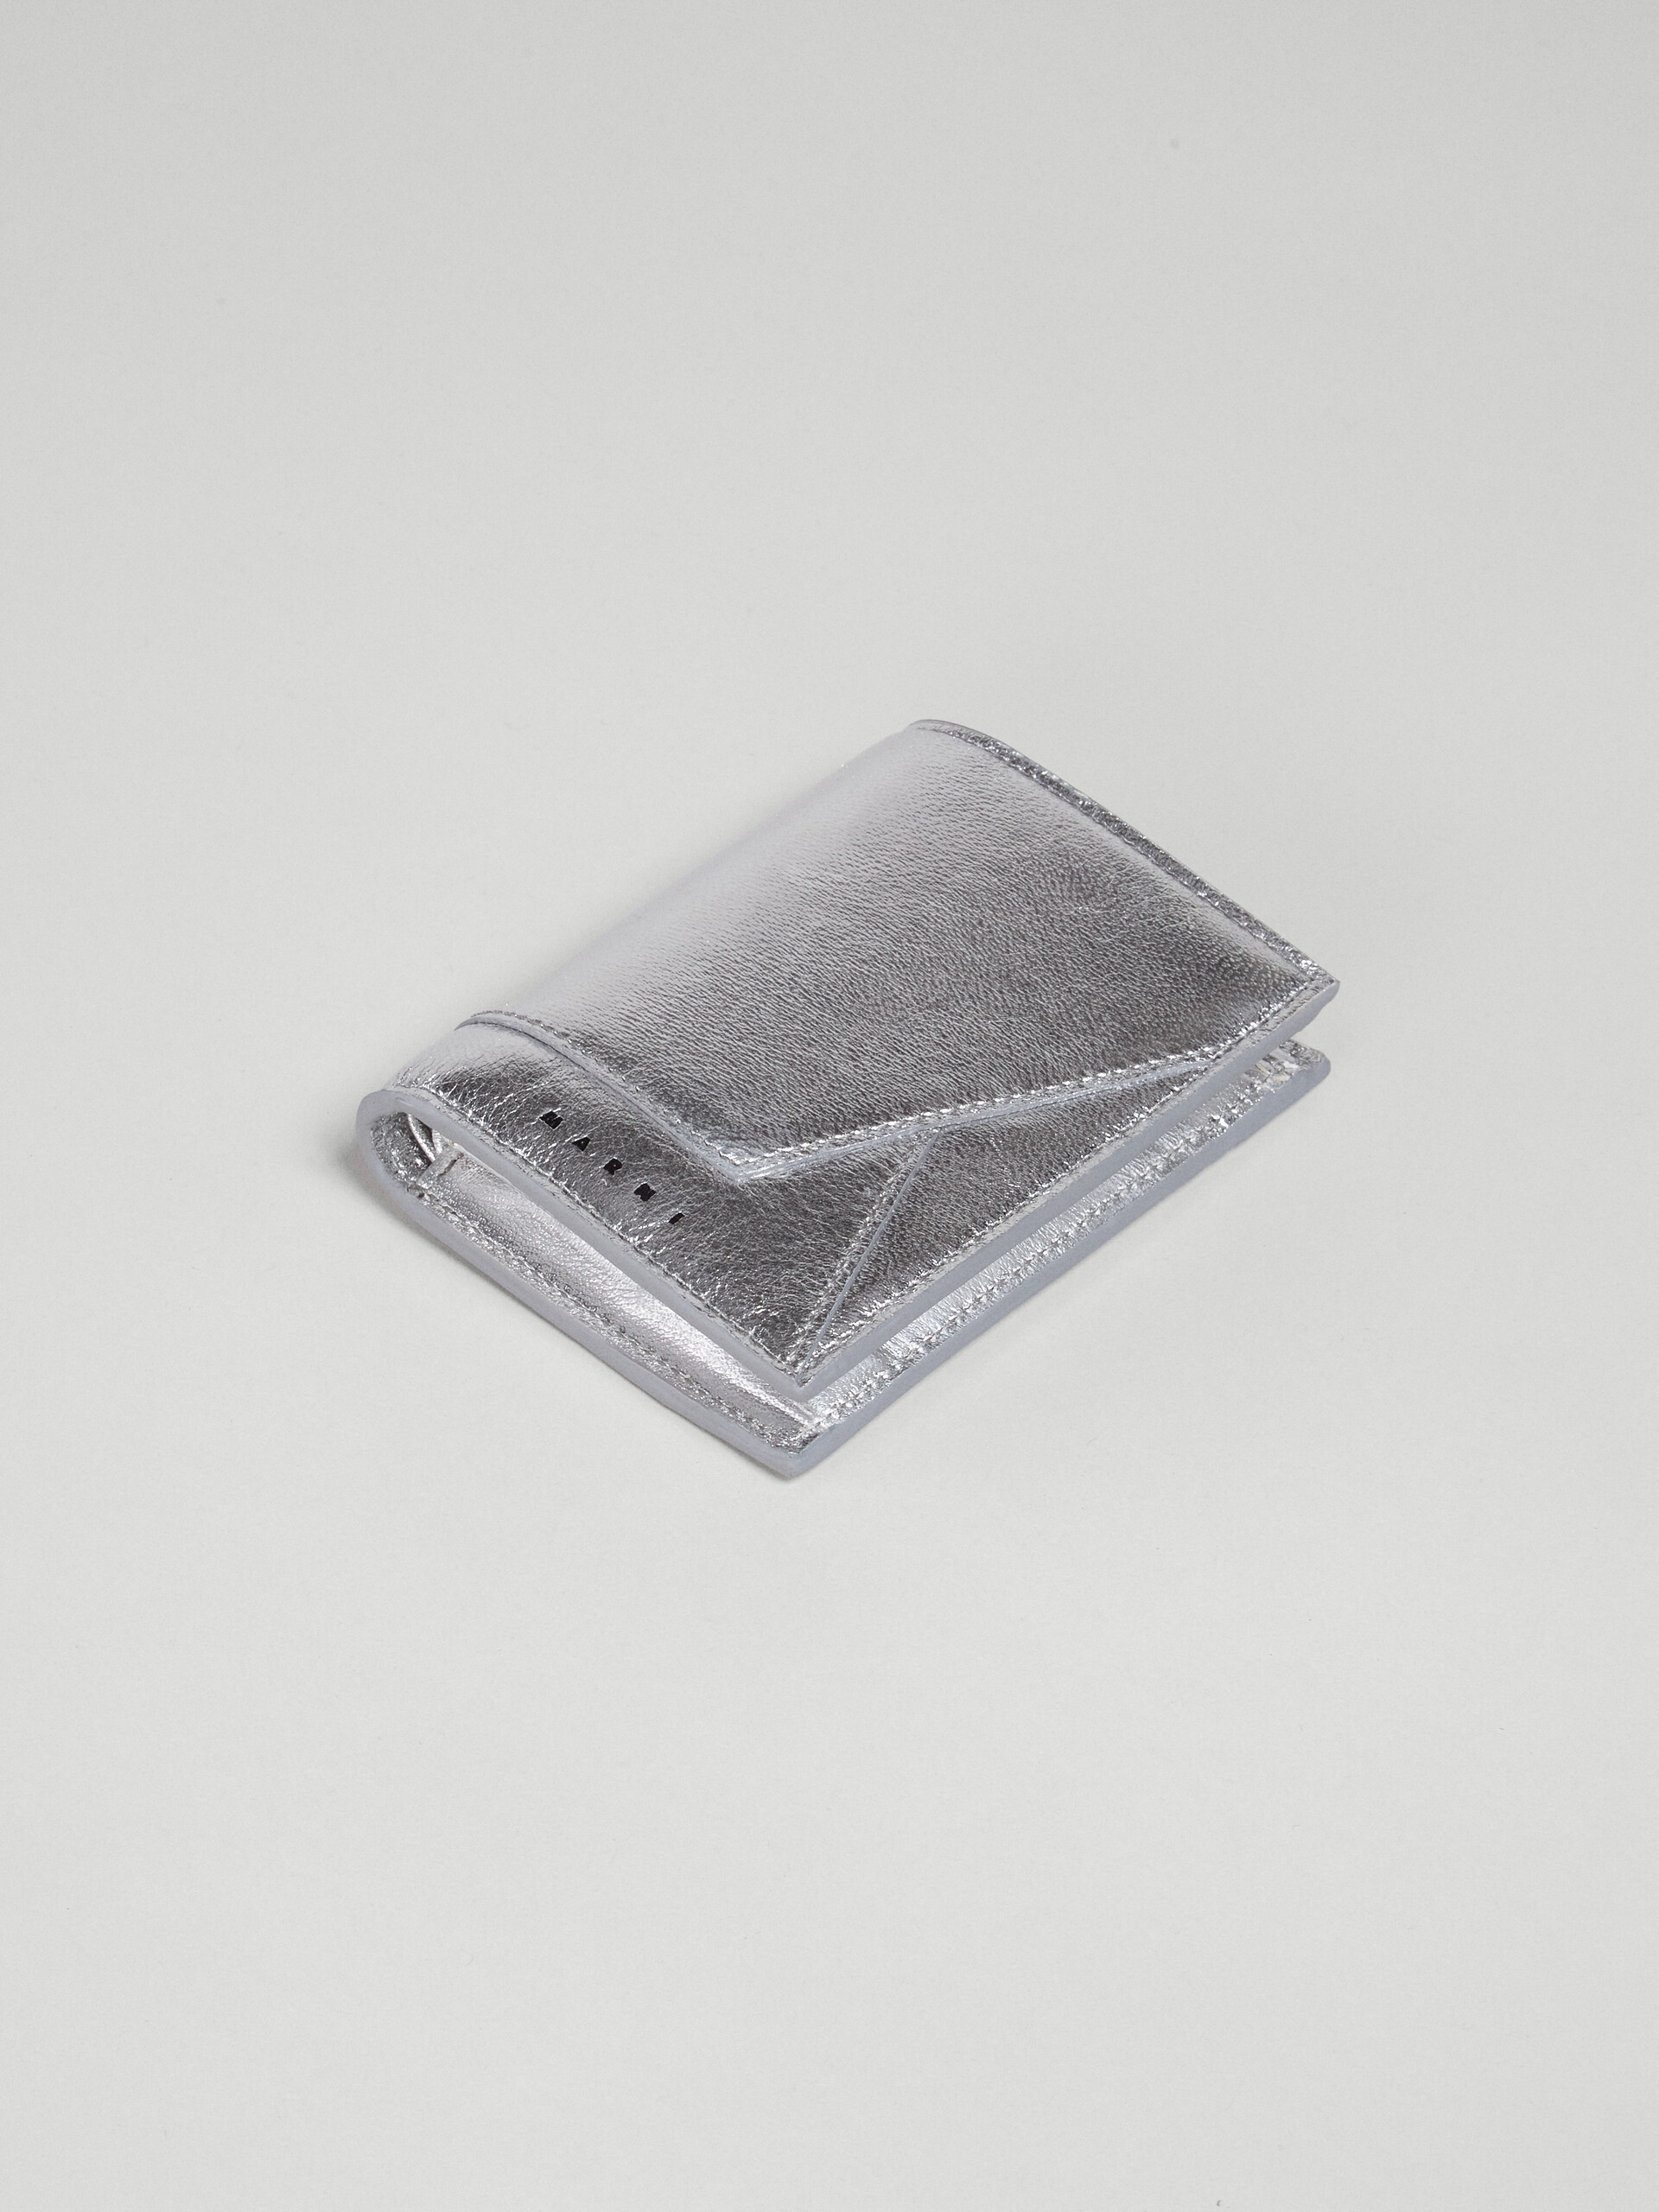 Portafoglio bi-fold in nappa metallizzata argento - Portafogli - Image 5